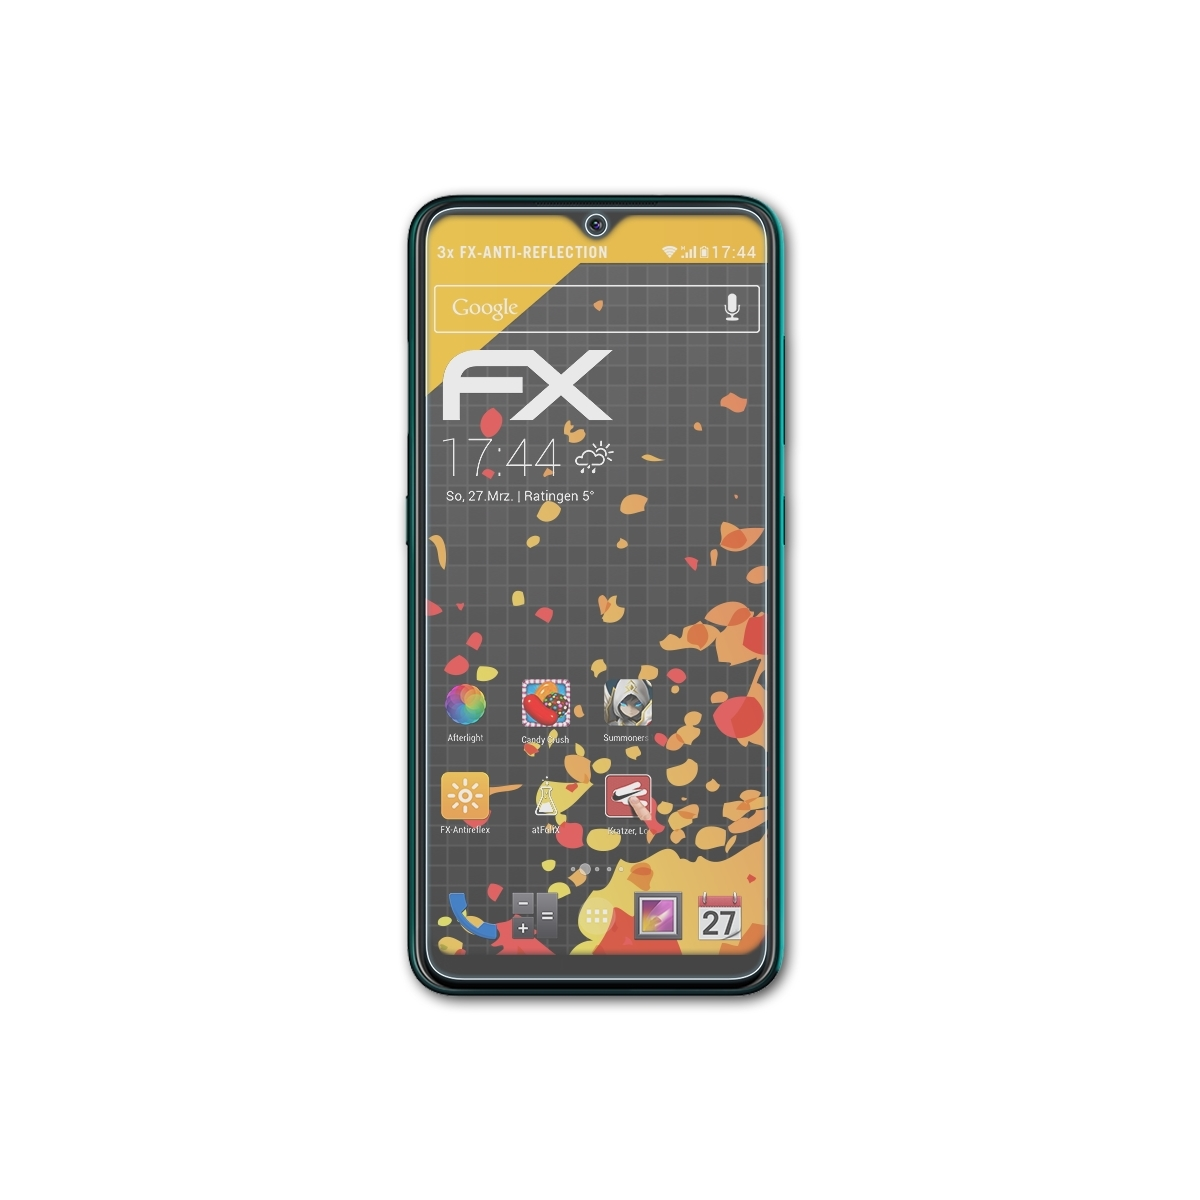 Displayschutz(für 3x FX-Antireflex 7.2) Nokia ATFOLIX